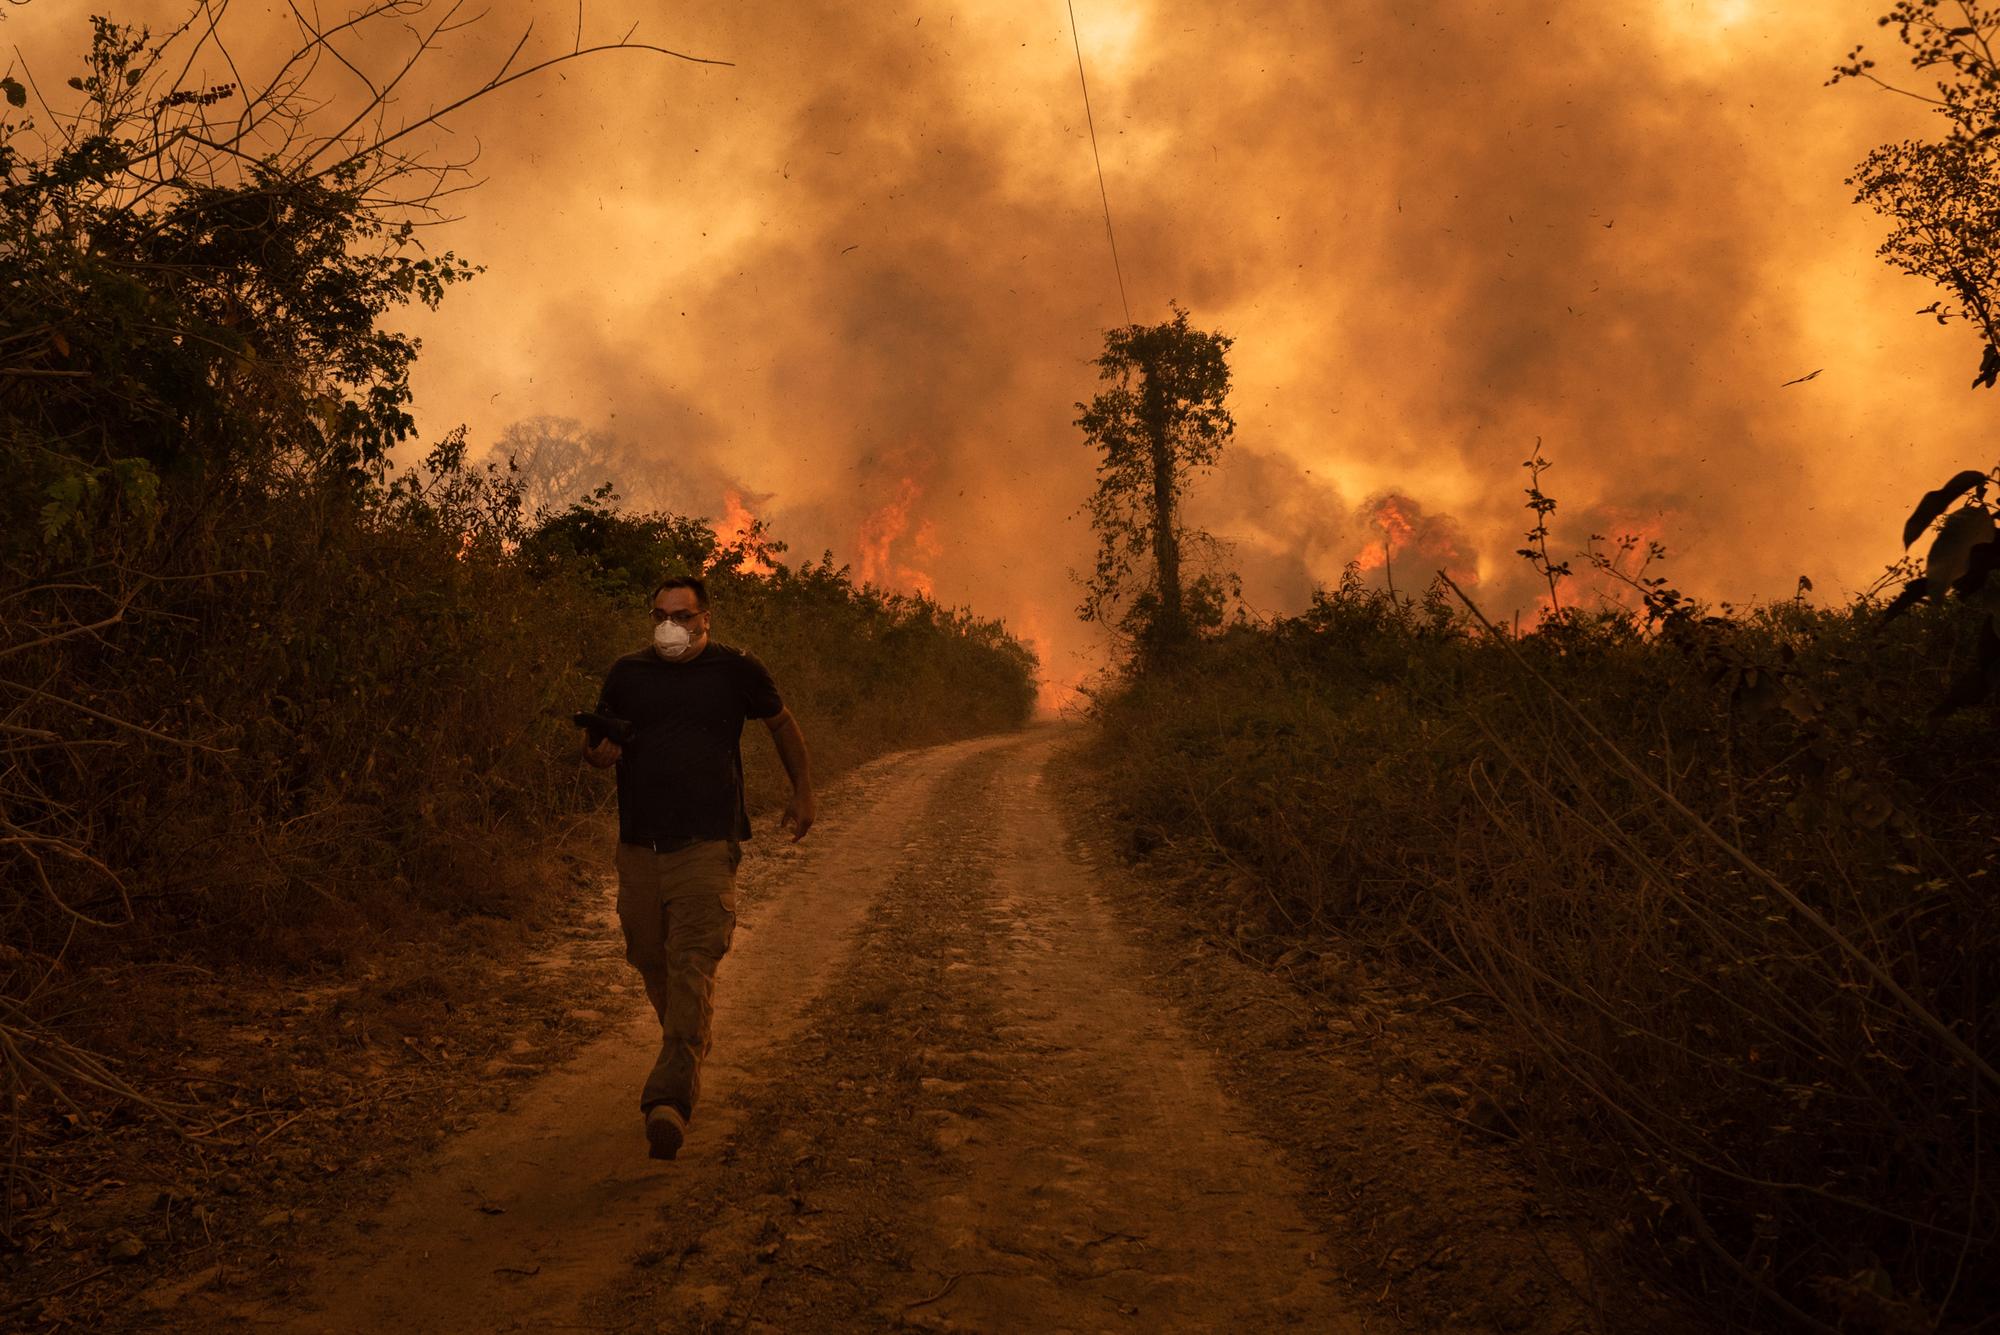 Un homme fuit l'incendie qui dévaste la région de Mato Grosso, dans le Pantanal brésilien, le 19 août 2020. [NurPhoto/AFP - Gustavo Basso]